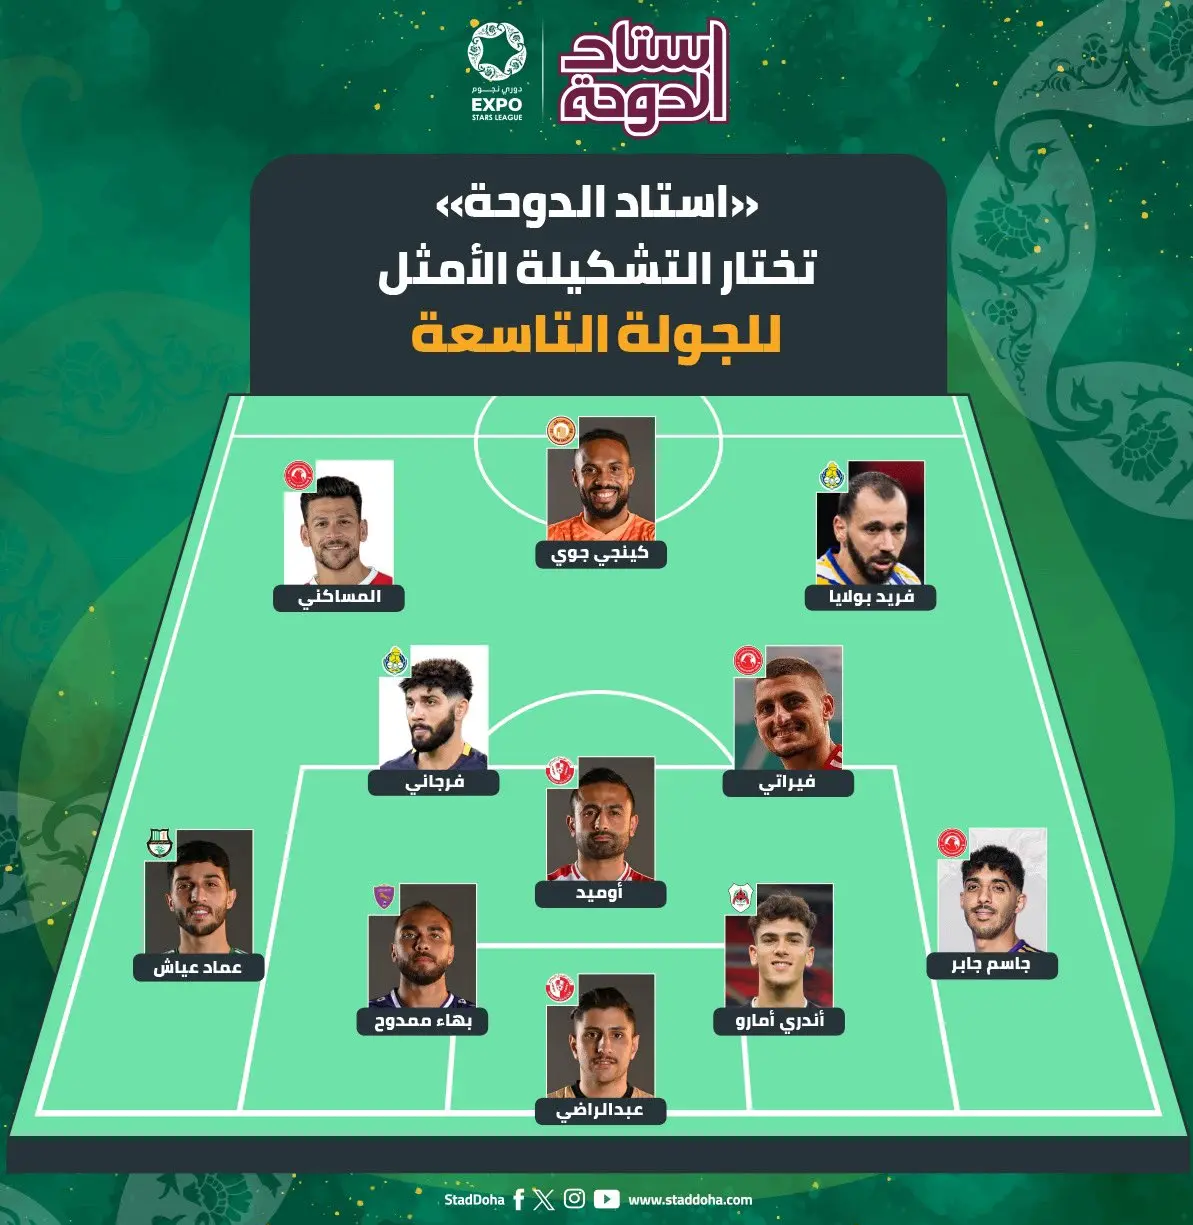  هافبک تیم ملی ایران در تیم منتخب هفته لیگ قطر +عکس 